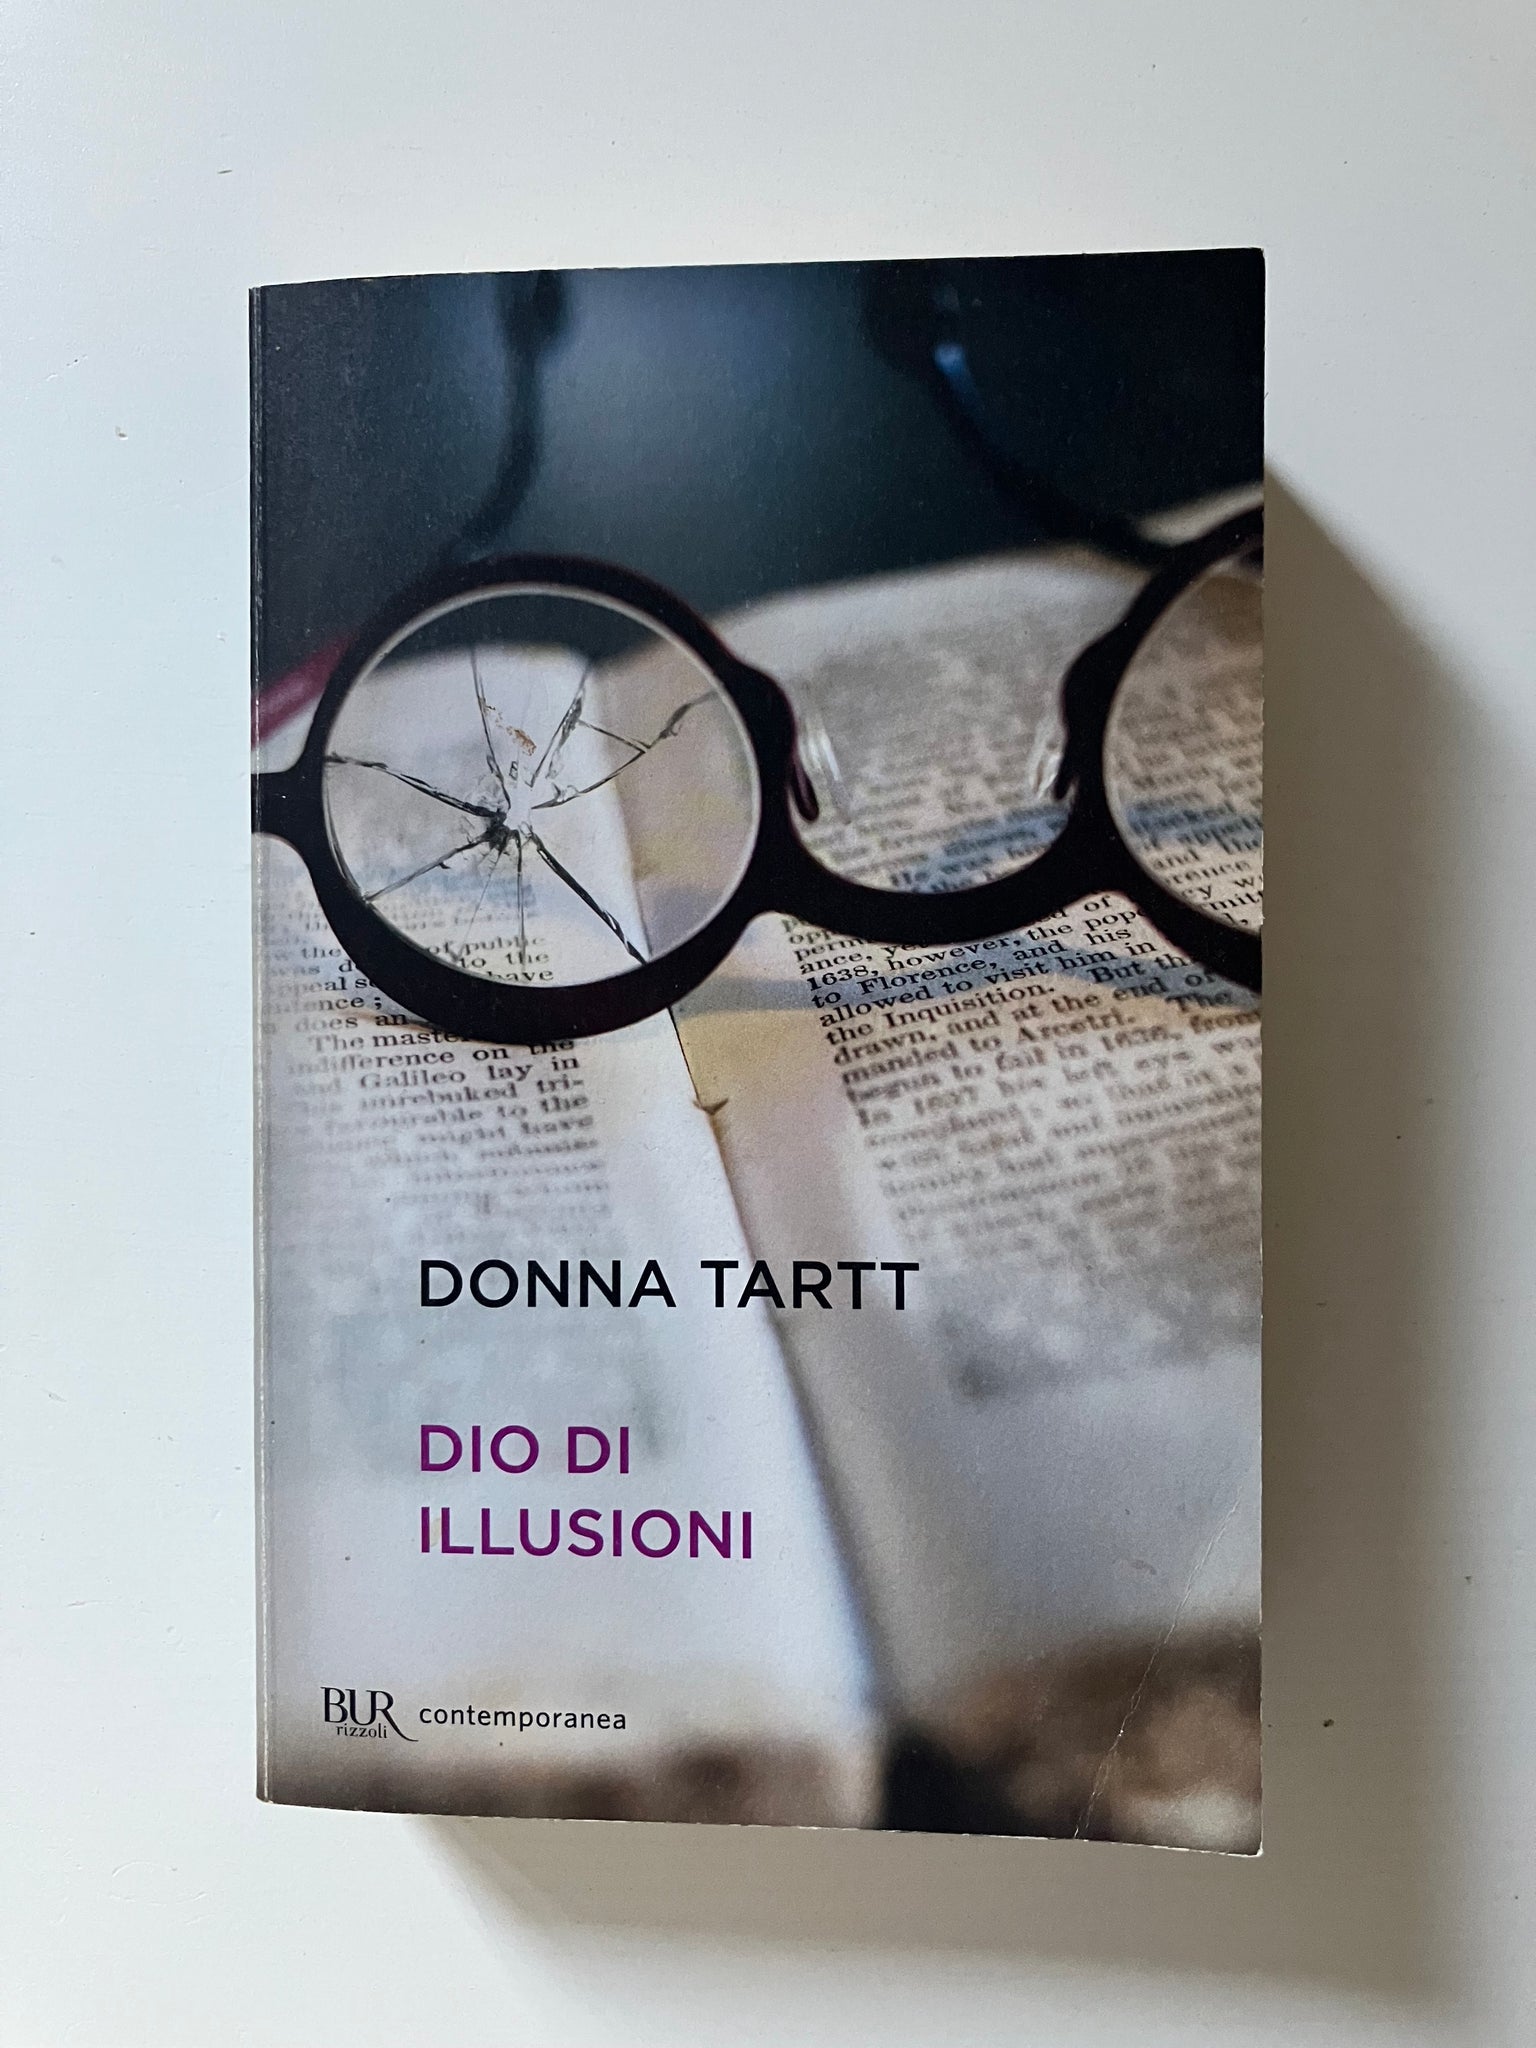 DONNA TARTT - DIO DI ILLUSIONI - ED: BUR - ANNO: 1995 (SR)